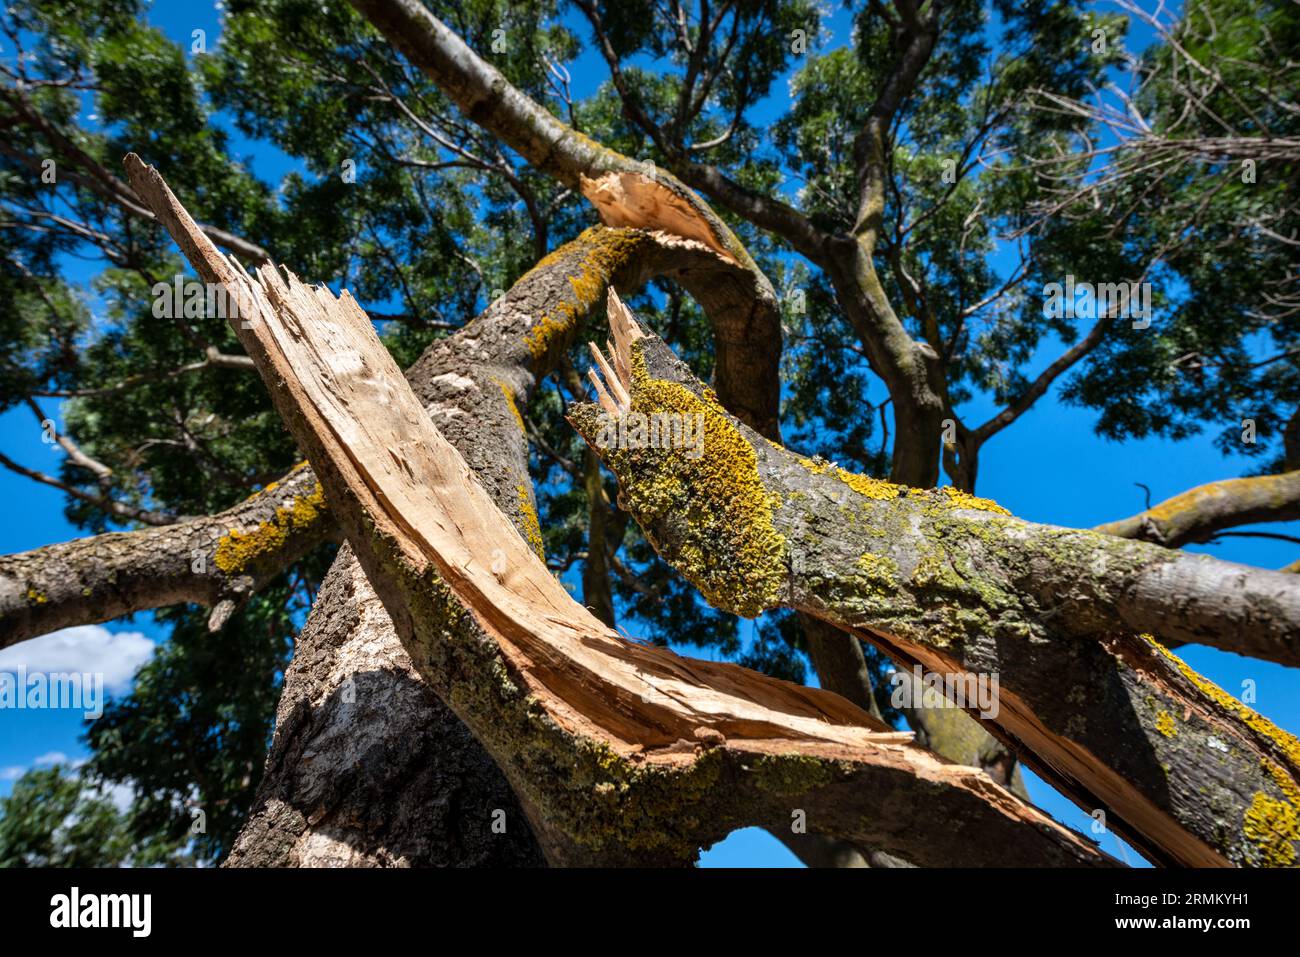 Regarder du niveau du sol à un arbre contre un ciel bleu avec une branche d'arbre cassée au premier plan, ciel bleu, feuilles d'arbre et mousse Banque D'Images